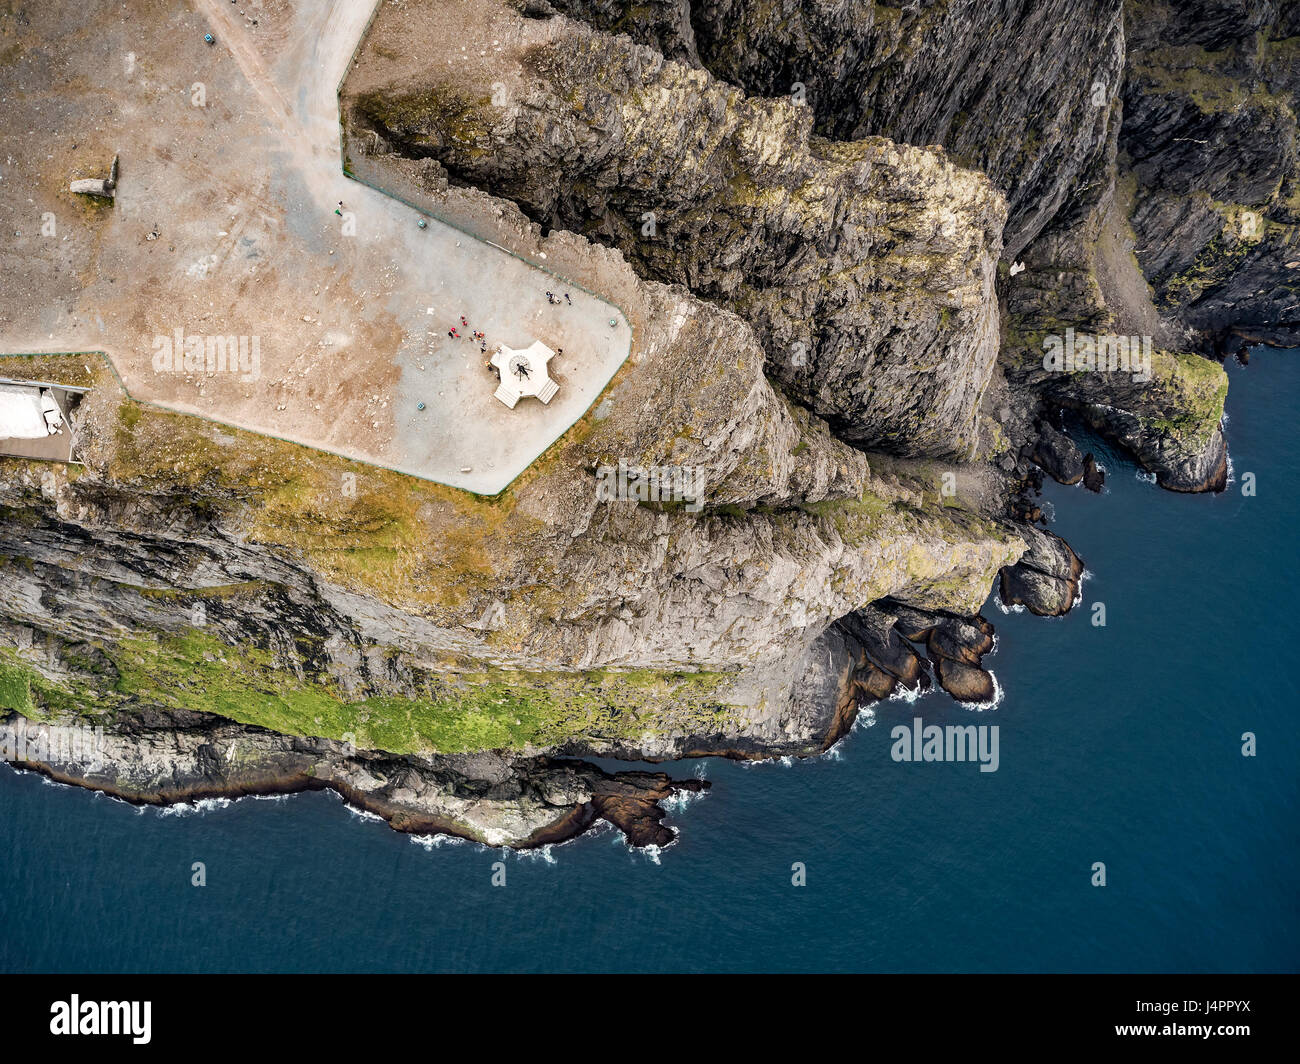 La côte de la mer de Barents le Cap nord (Nordkapp) dans le nord de la Norvège, la photographie aérienne. Banque D'Images